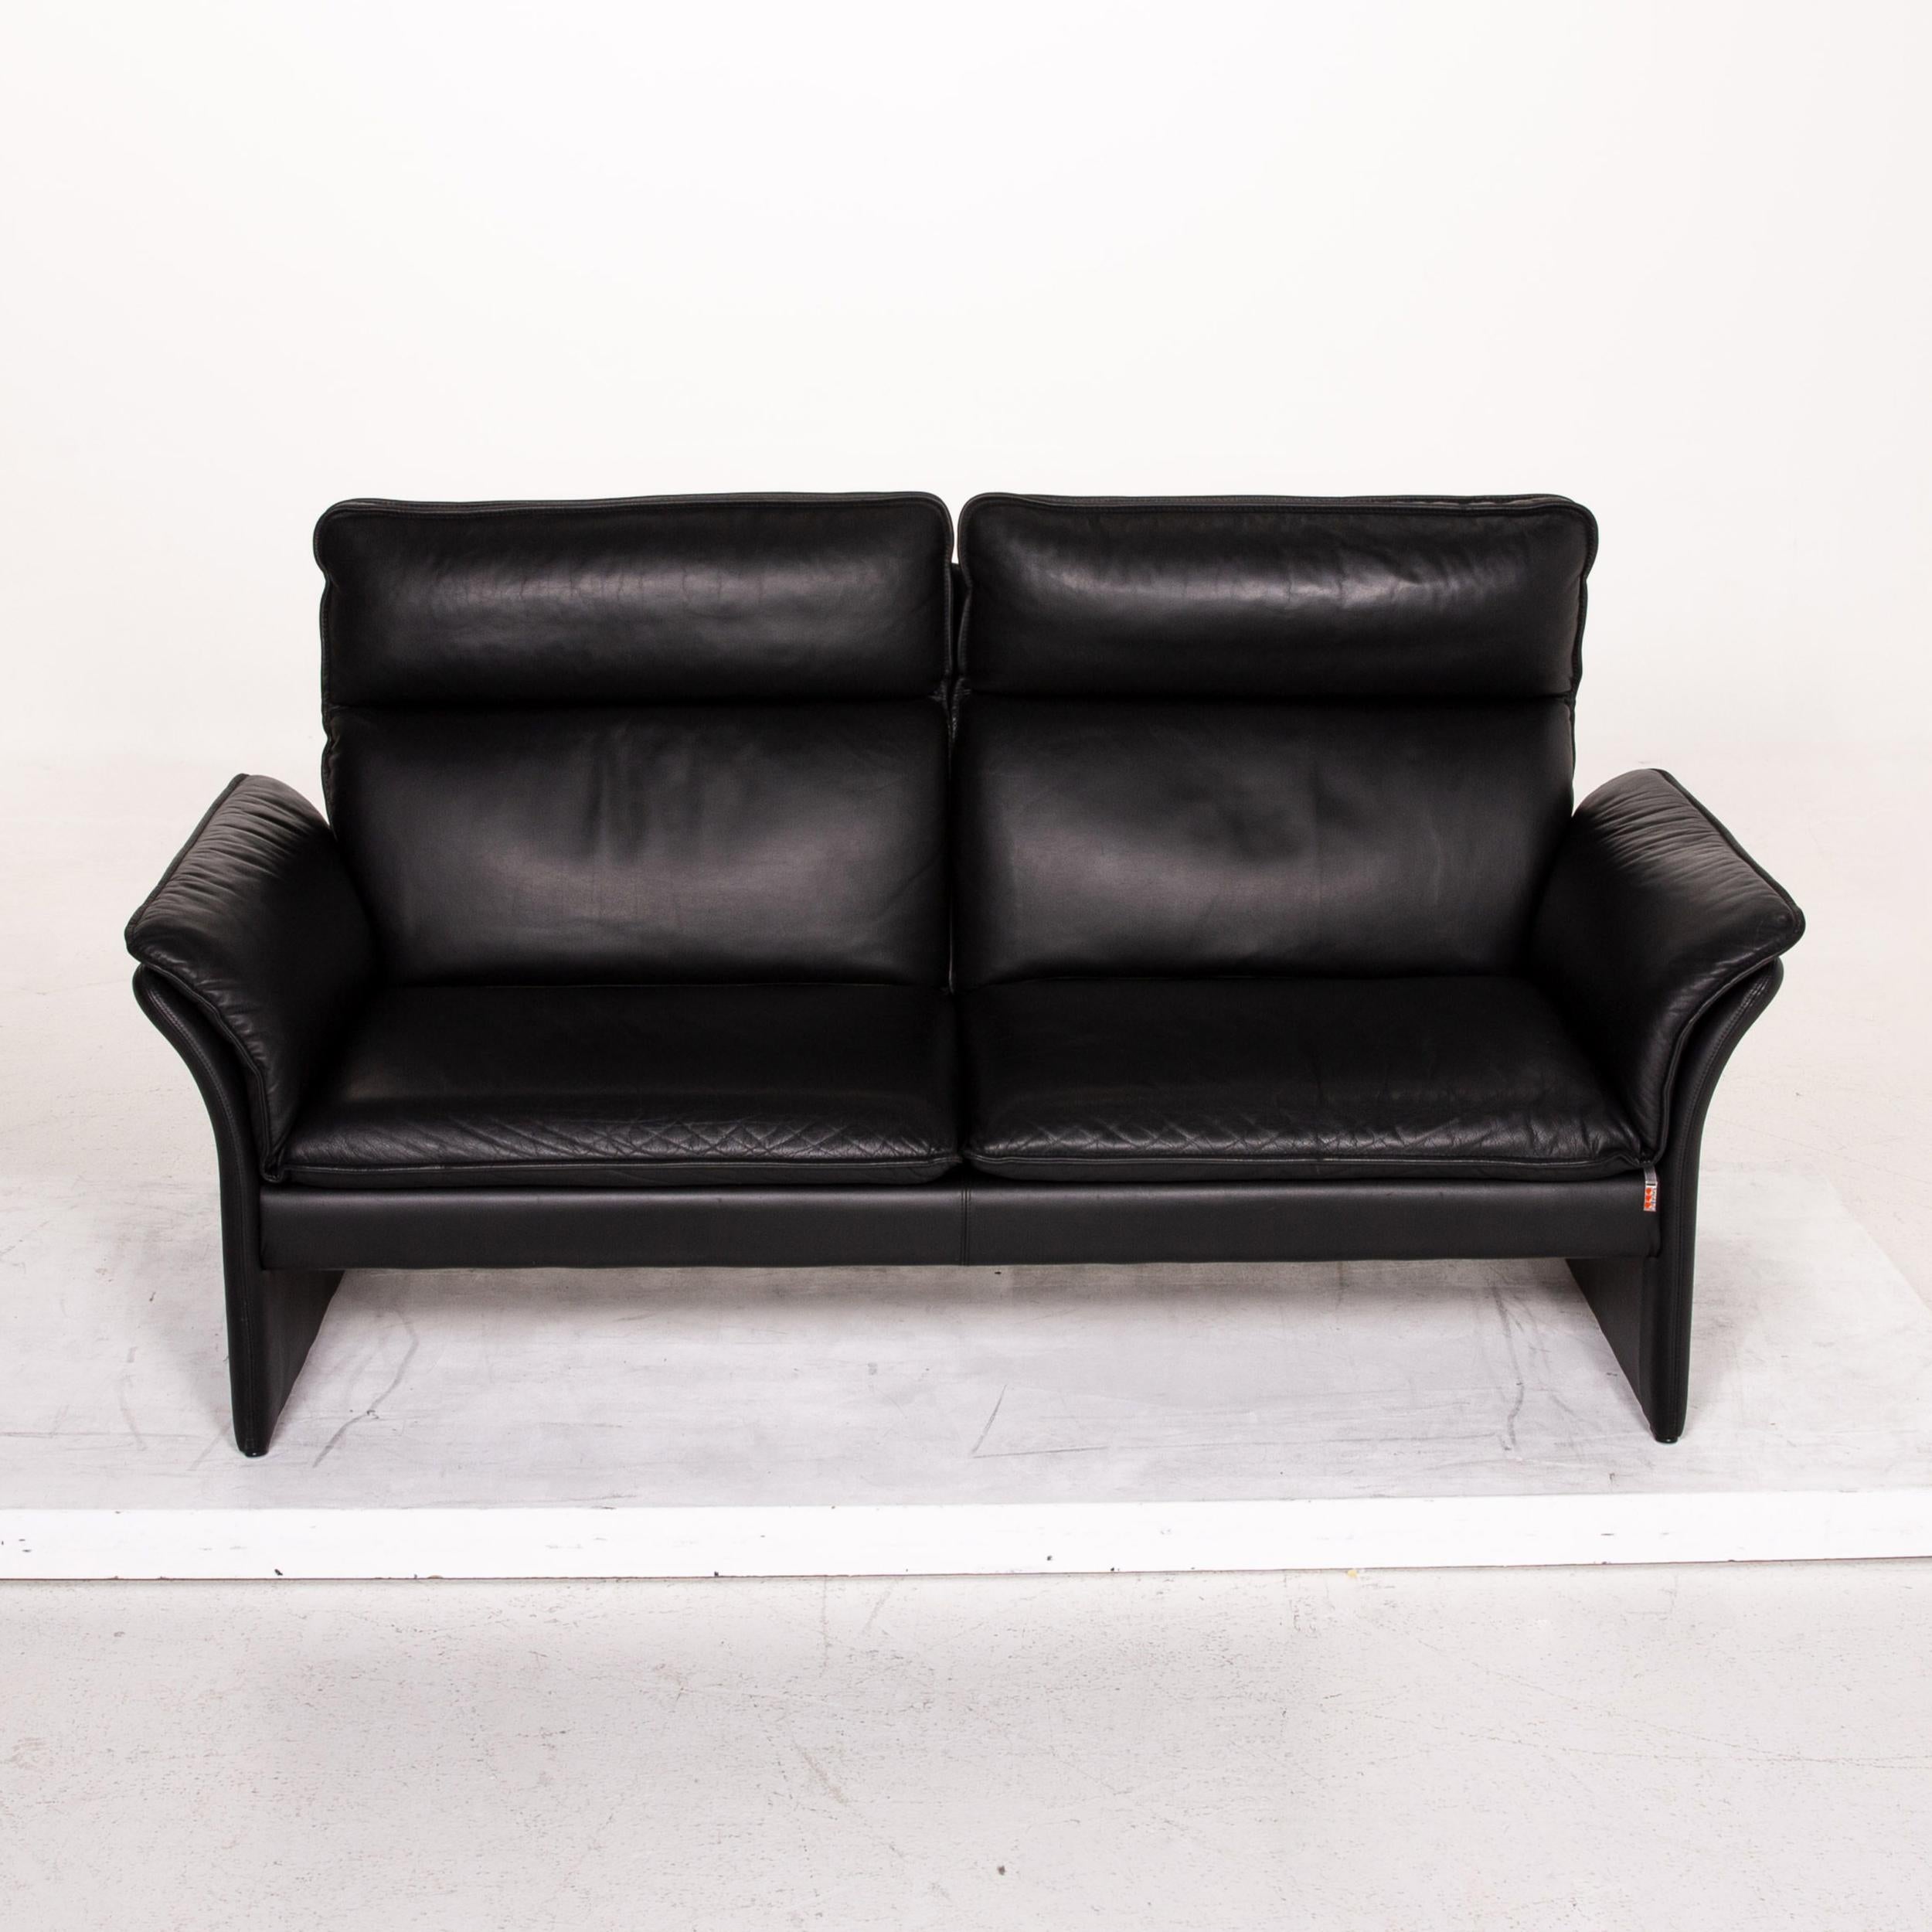 Three-Point Scala Leather Sofa Set Black 1 Three-Seat 1 Two-Seat 8